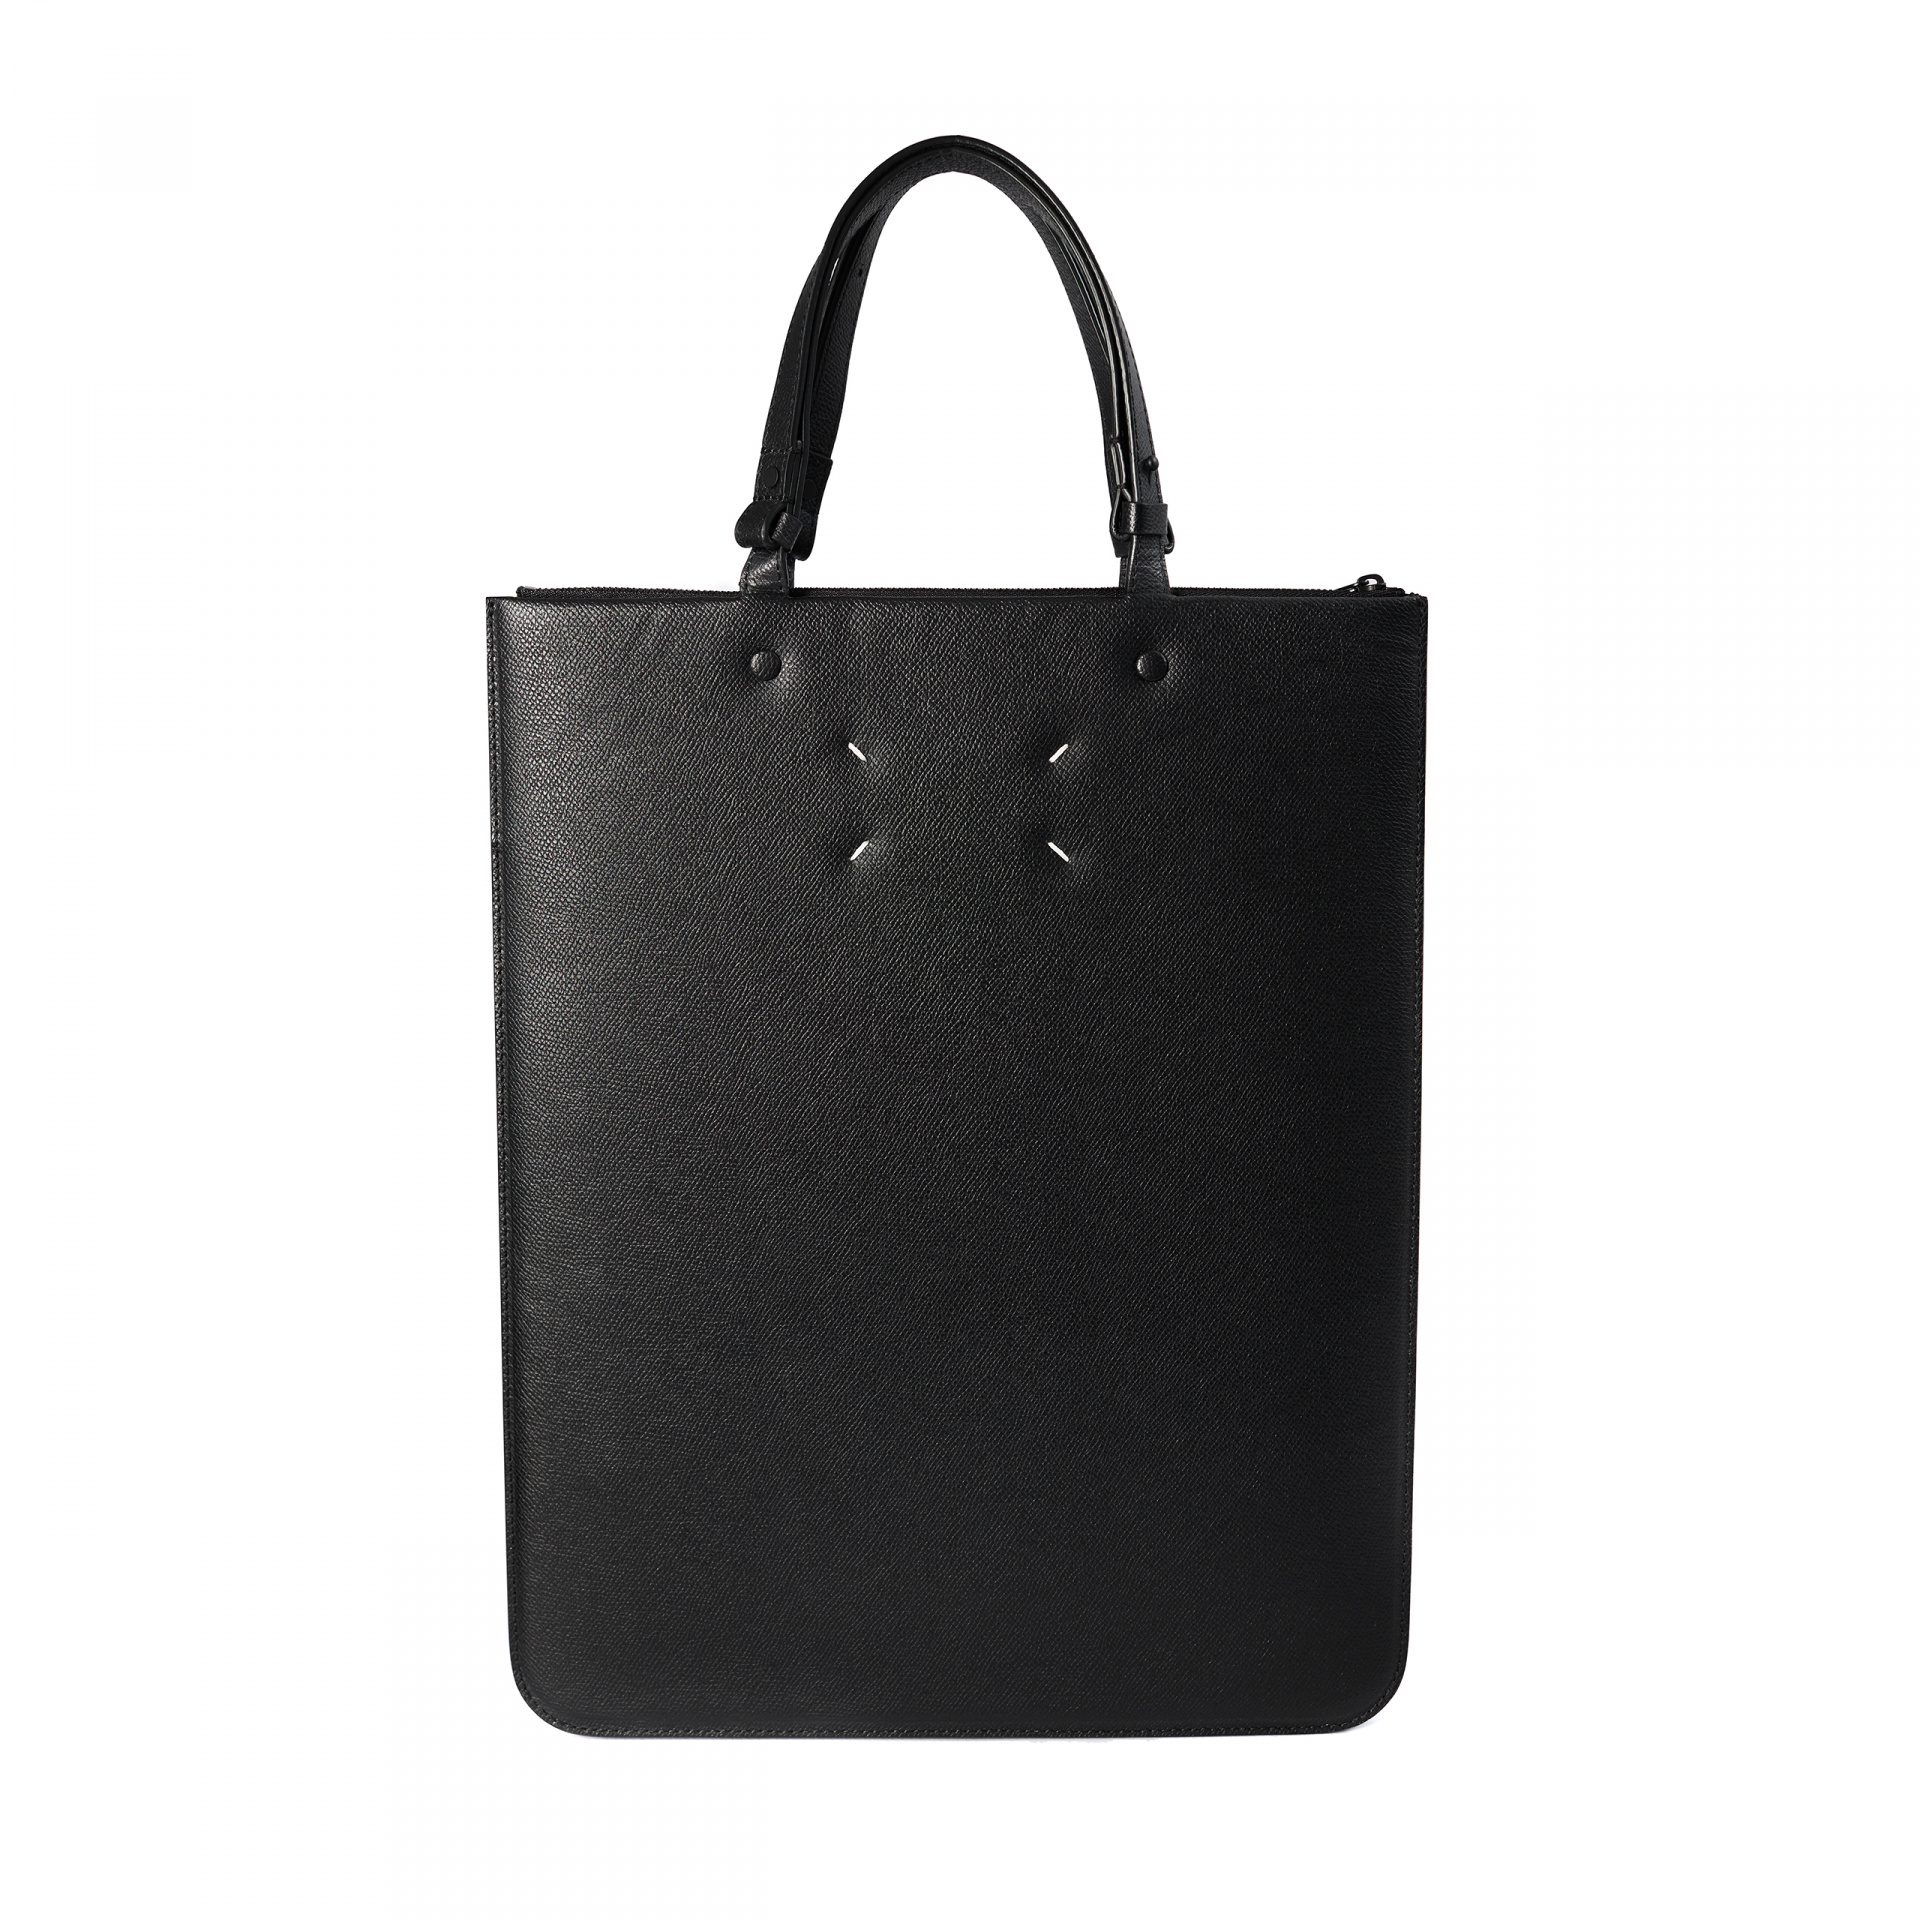 Maison Margiela Black leather bag